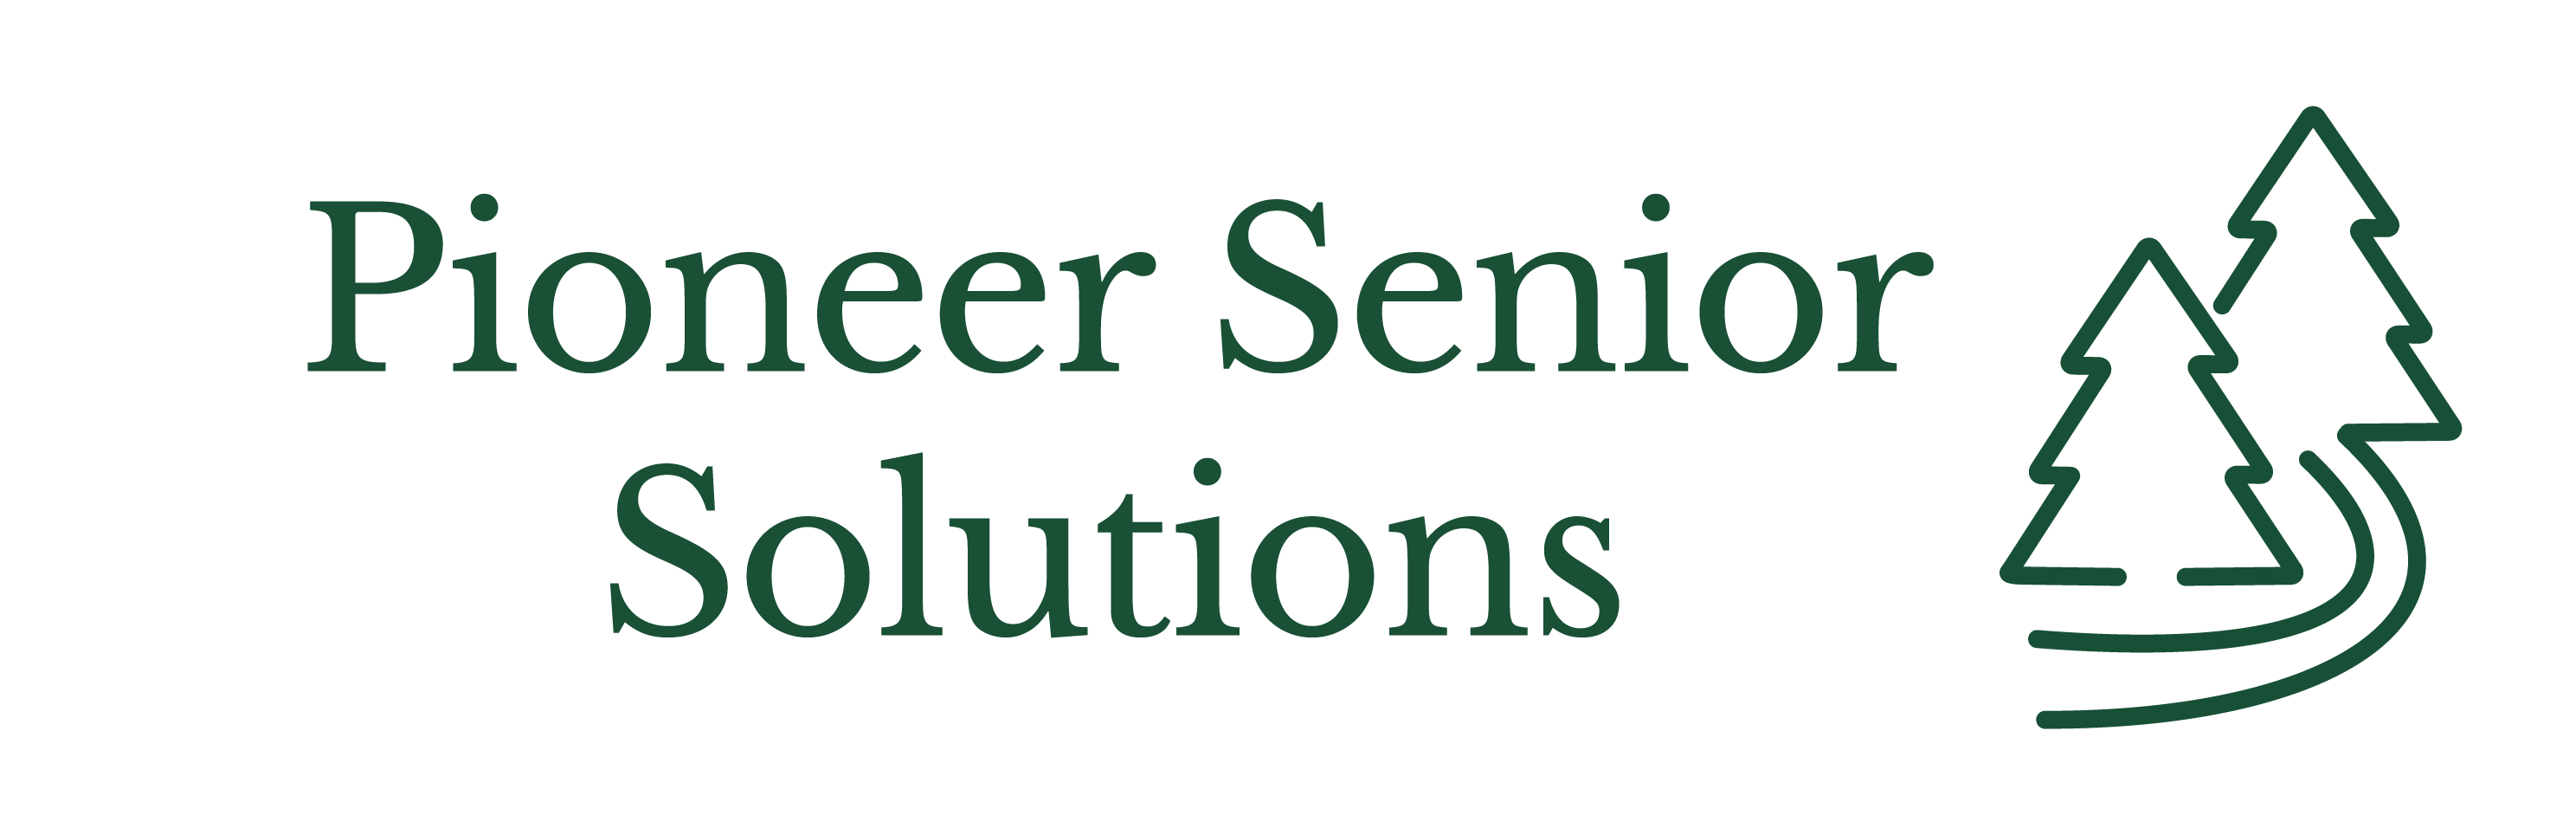 Pioneer Senior Solutions_Logo - Full Croped